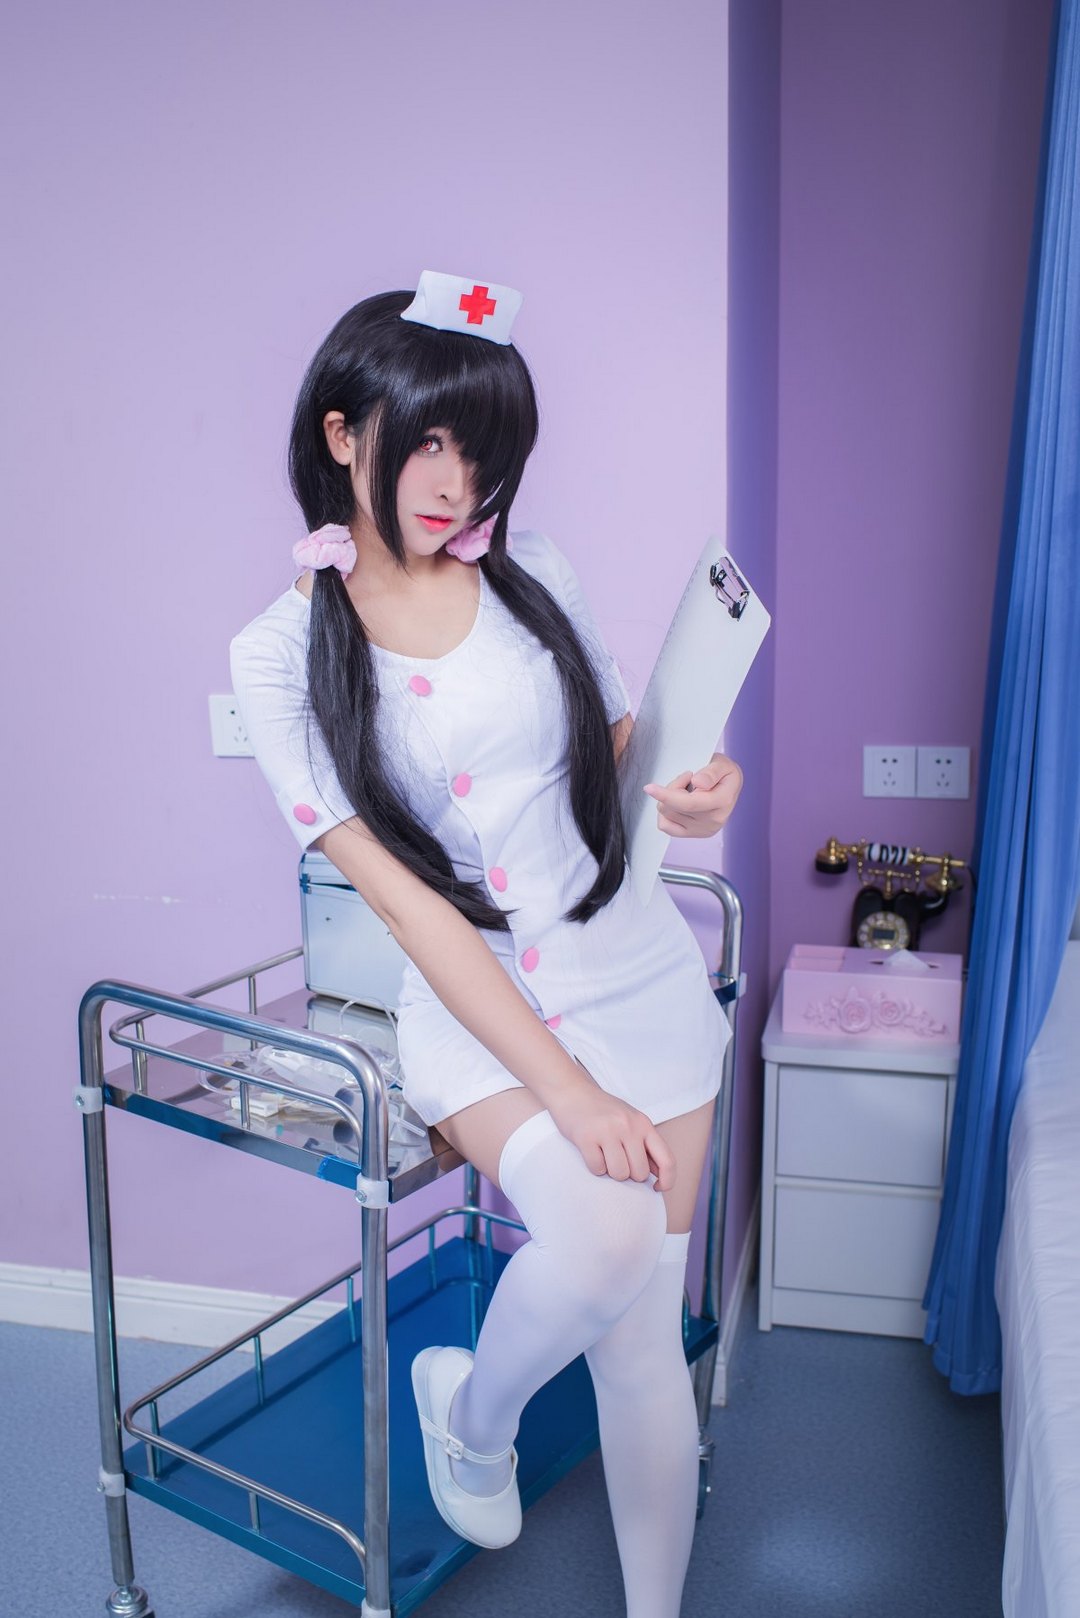 白丝护士制服美女cosplay时崎狂三同人图片